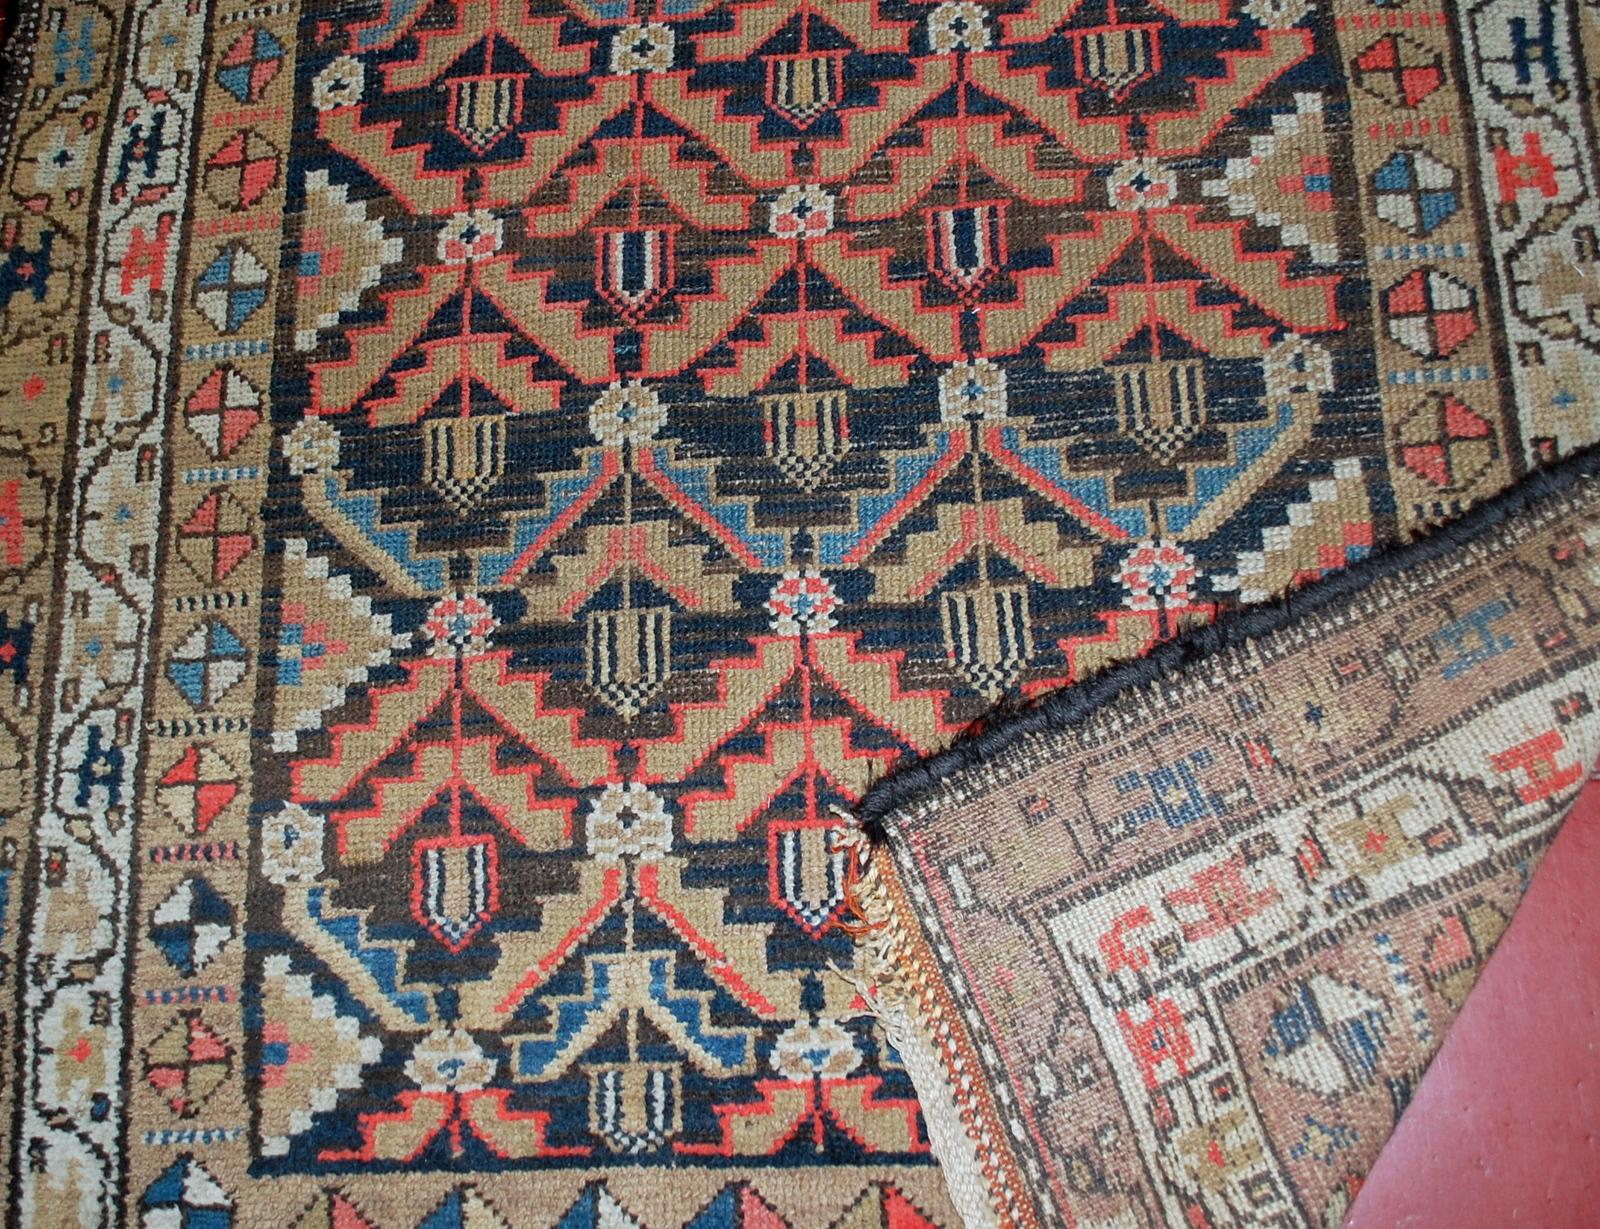 Tapis persan antique Hamadan en état original, il a quelques poils bas. Le tapis provient de la région du Moyen-Orient et a été fabriqué au début du XXe siècle.

-Etat : original bon, quelques poils bas.

-Circa 1920s,

-Taille : 4.1' x 7' (